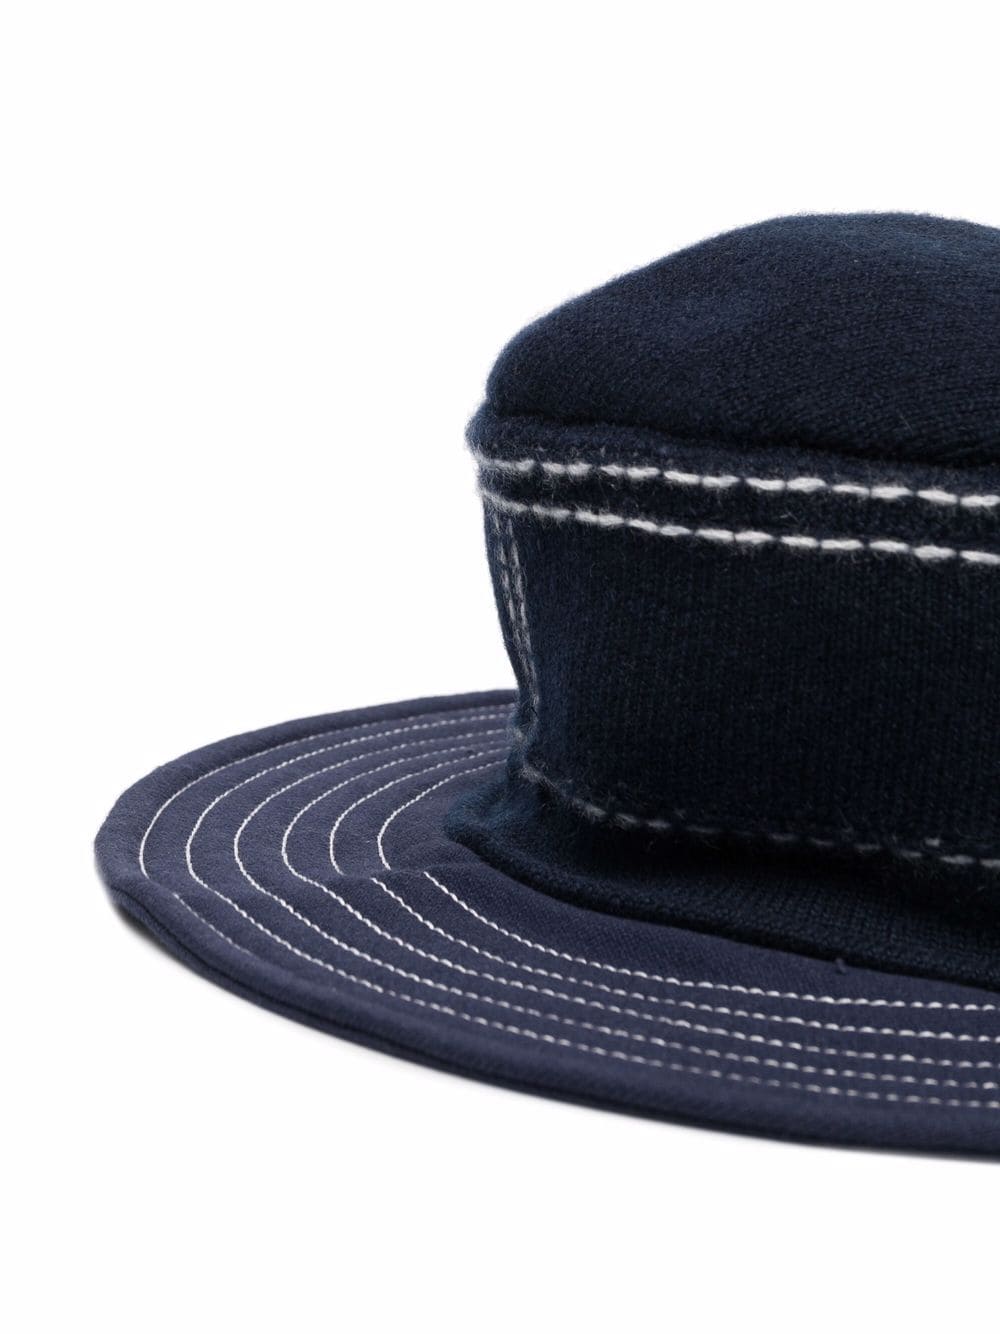 фото Barrie шляпа с широкими полями и декоративной строчкой